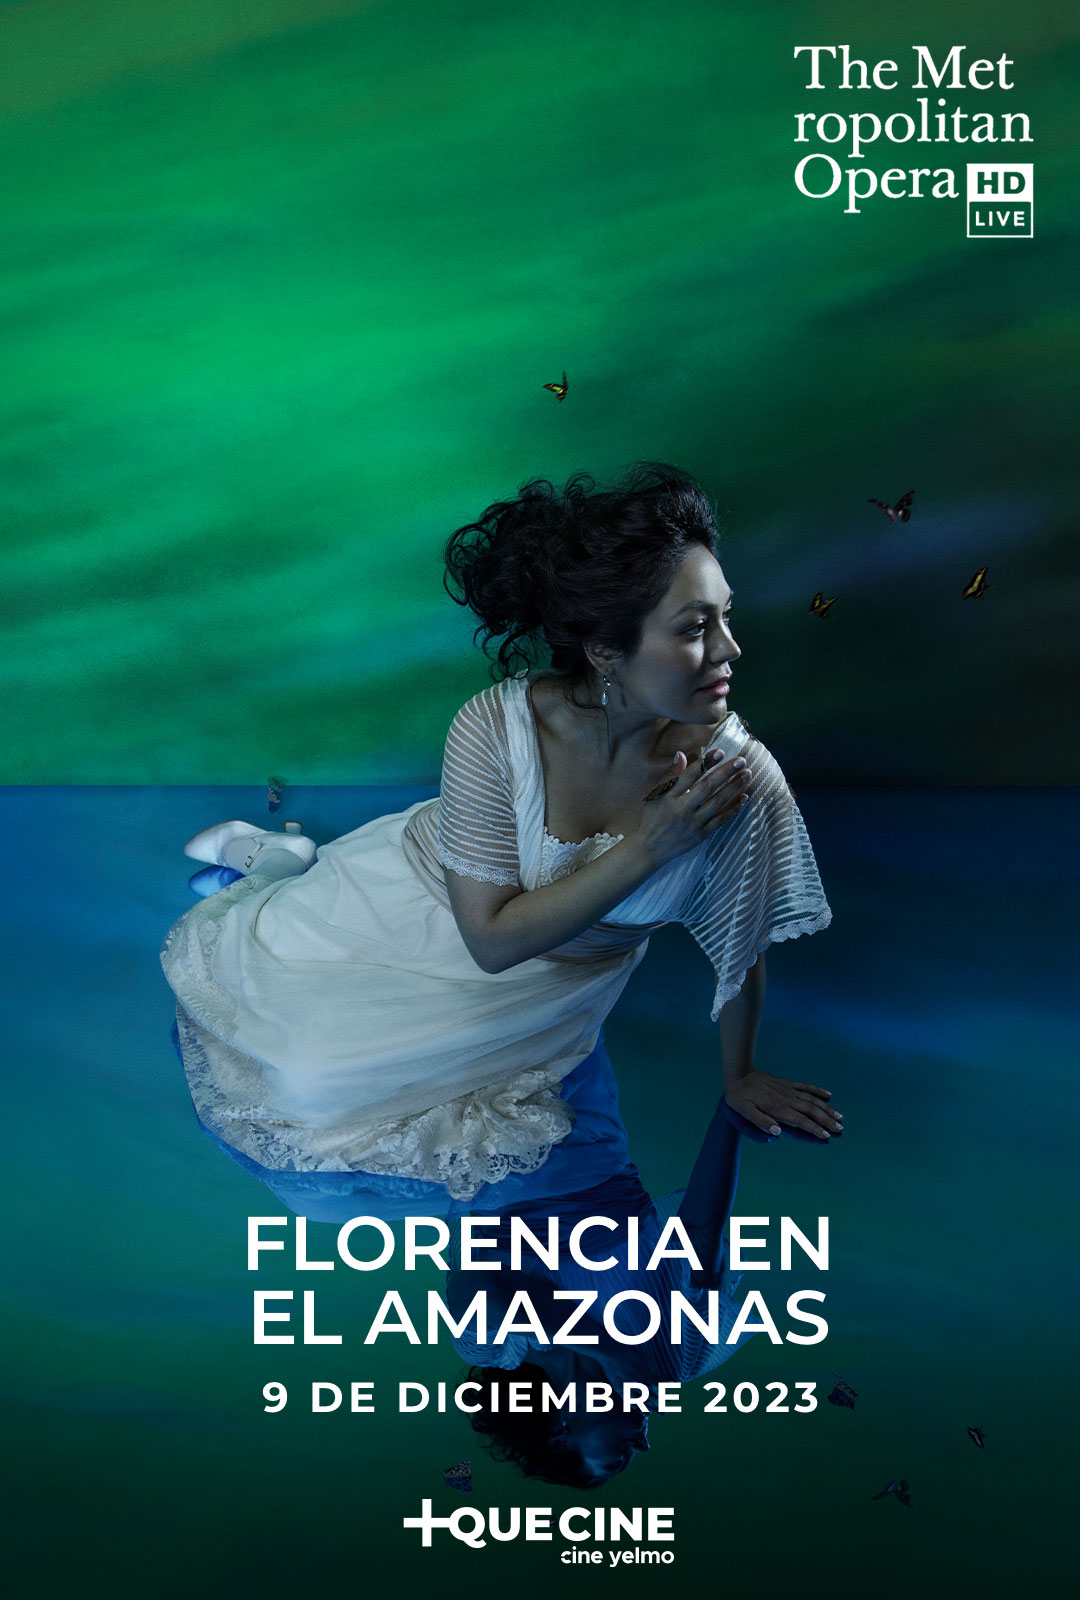 Cine Yelmo proyecta en exclusiva la premier de 'Florencia en el Amazonas', la ópera en castellano del MET inspirada en el realismo mágico de Gabriel García Márquez